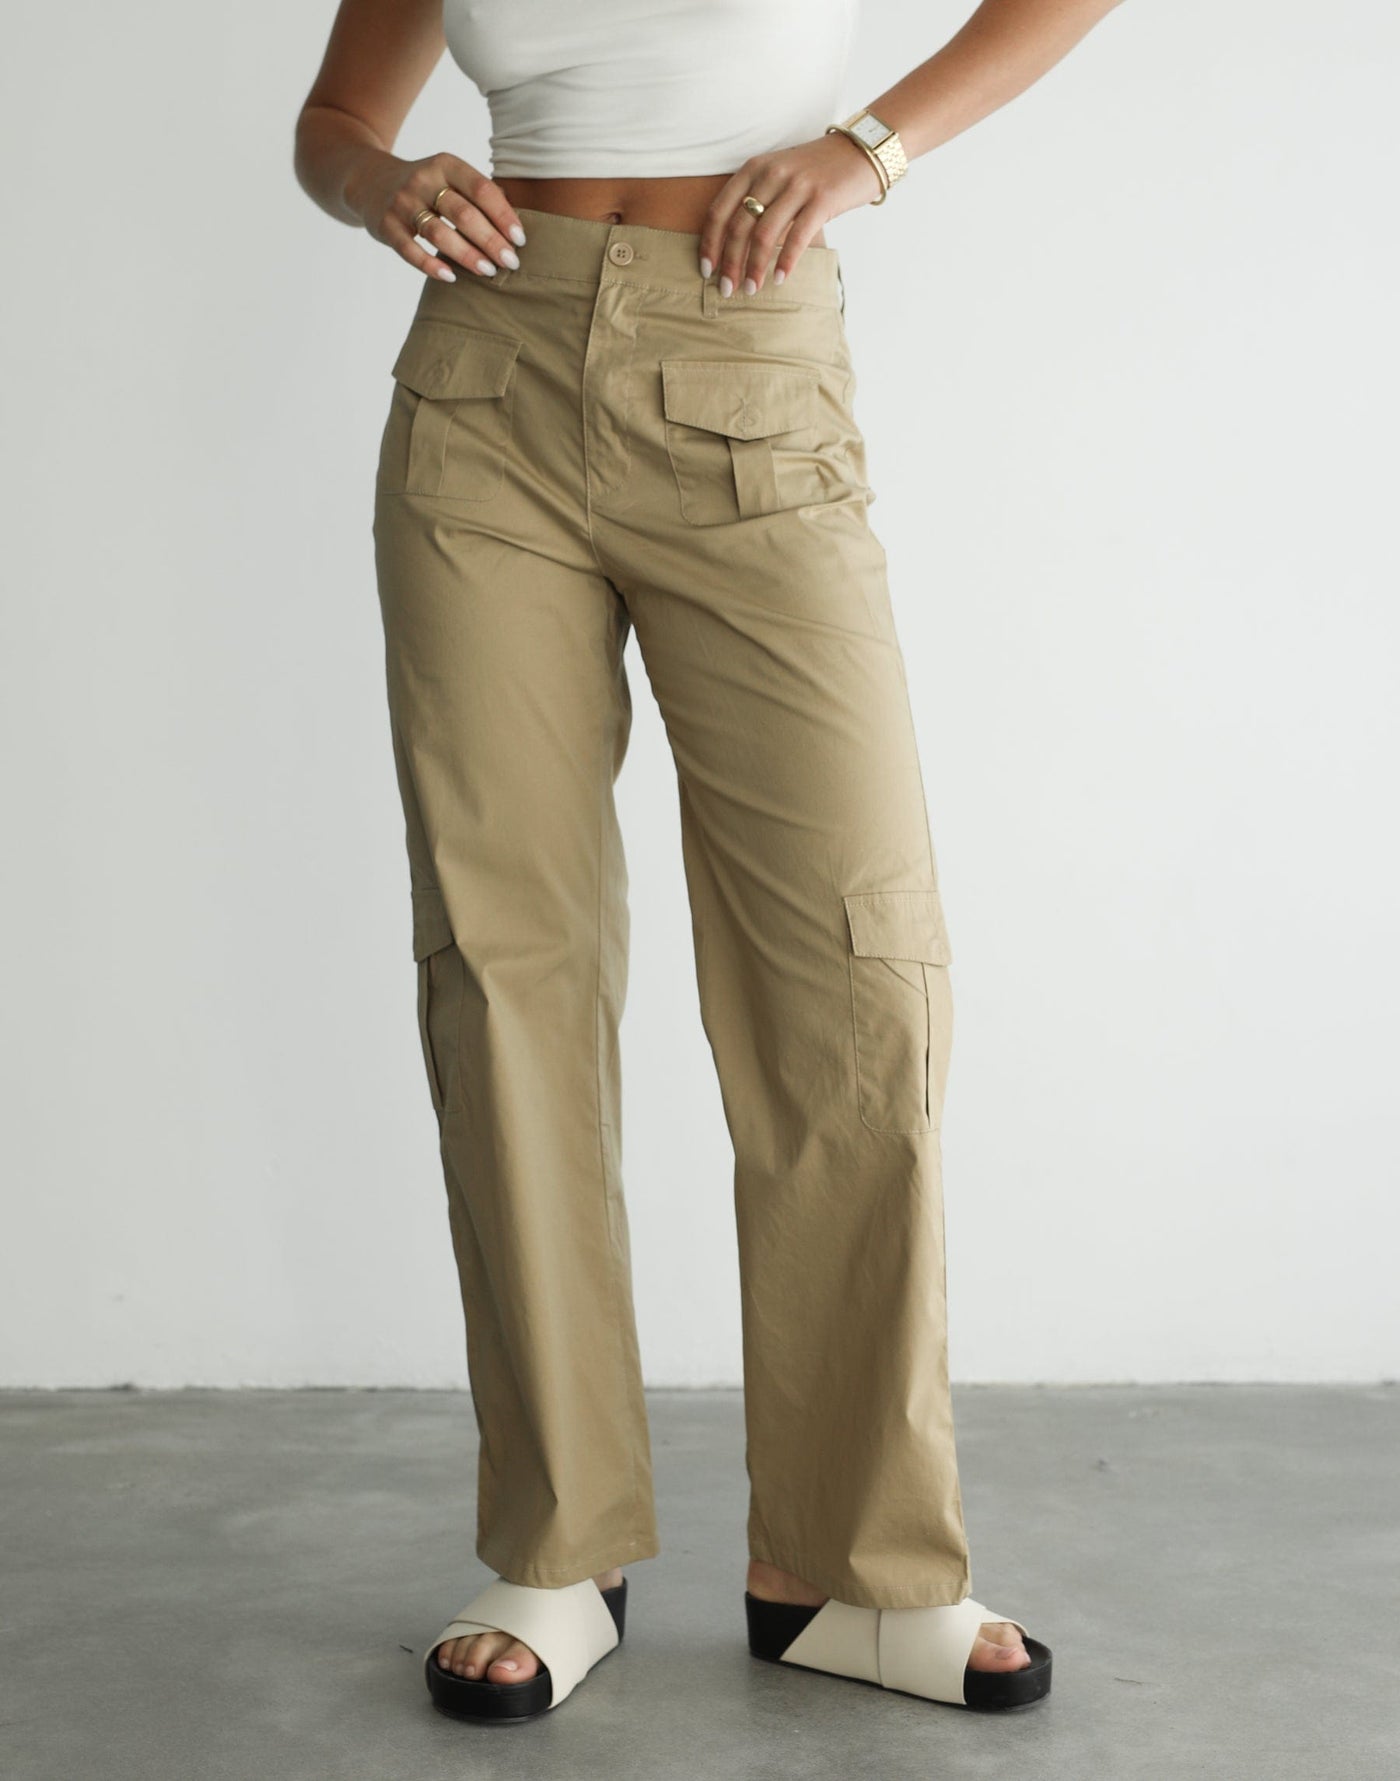 Criezelle Pants (Beige) - Beige Pants - Women's Pants - Charcoal Clothing